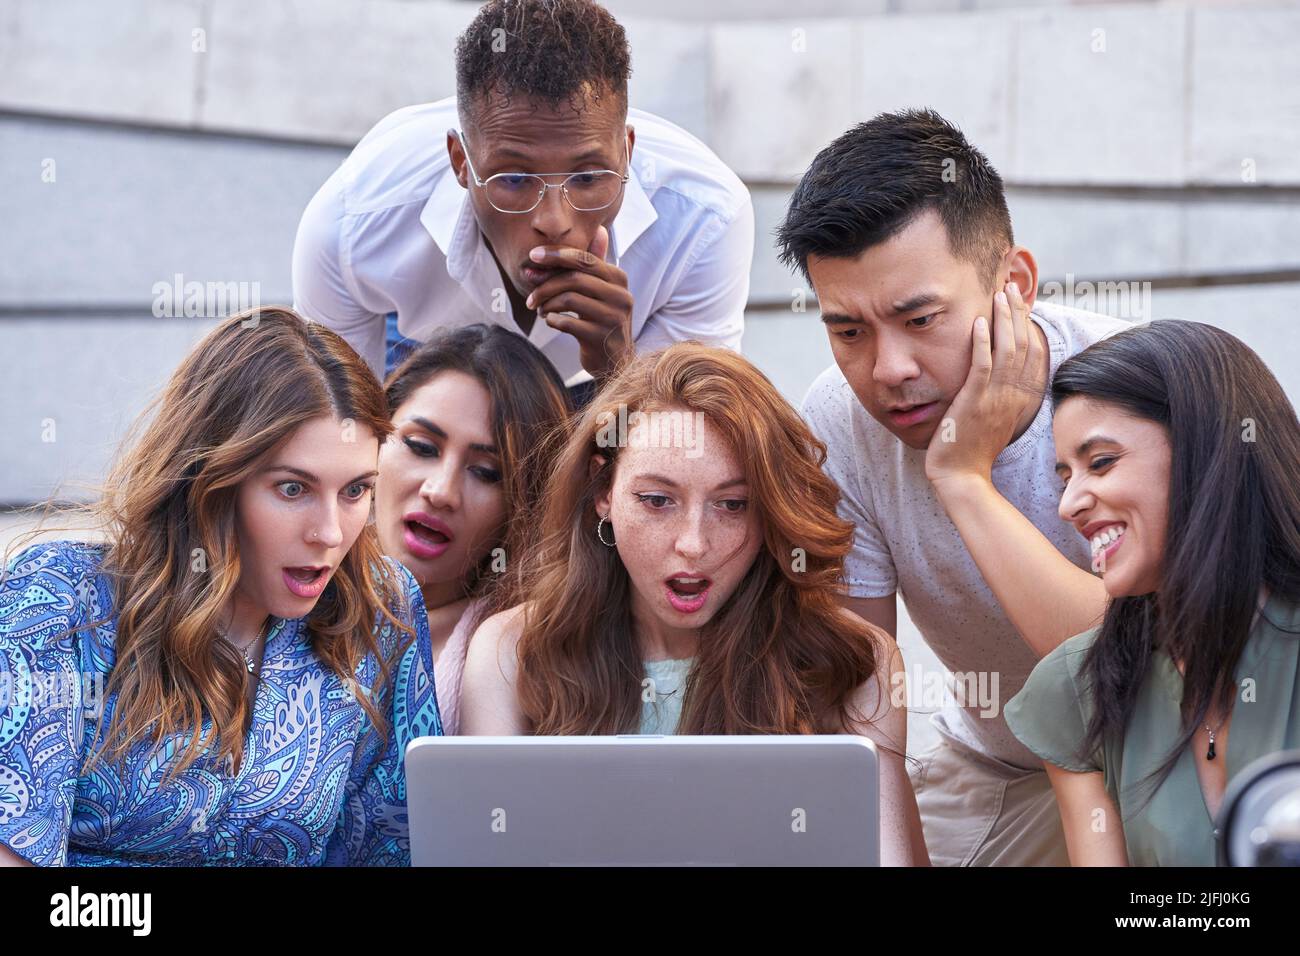 Groupe de personnes multiethniques regardent l'écran d'ordinateur portable avec une expression choquée sur leurs visages tout en étant assis sur les escaliers à l'extérieur. Mode de vie urbain, technologie et concept d'amitié. Banque D'Images